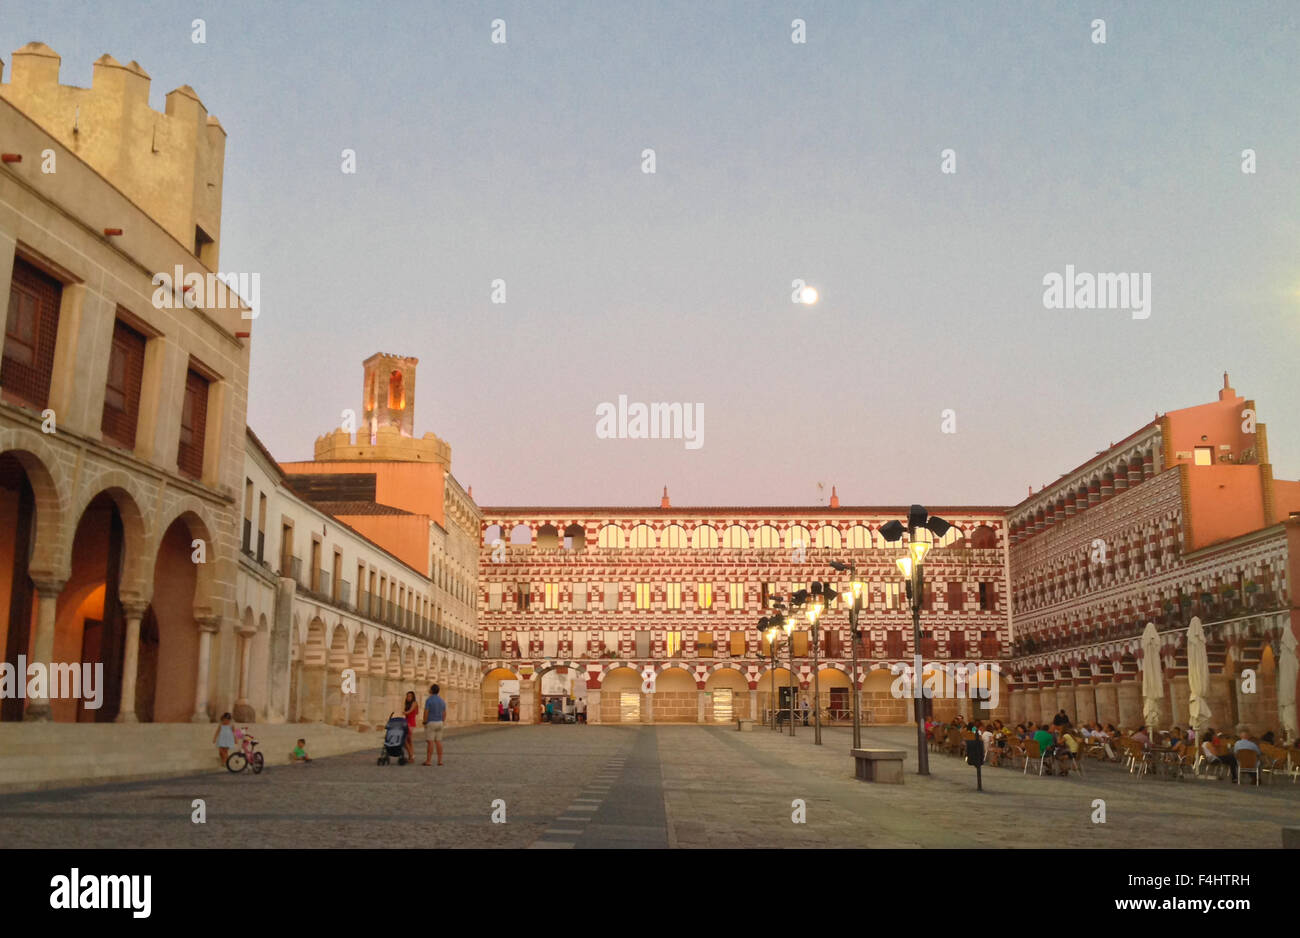 BADAJOZ, ESPAGNE - 27 août 2015 : La tombée de la lune en haute Square, Plaza Alta sur Badajoz, 27 août 2015 Banque D'Images